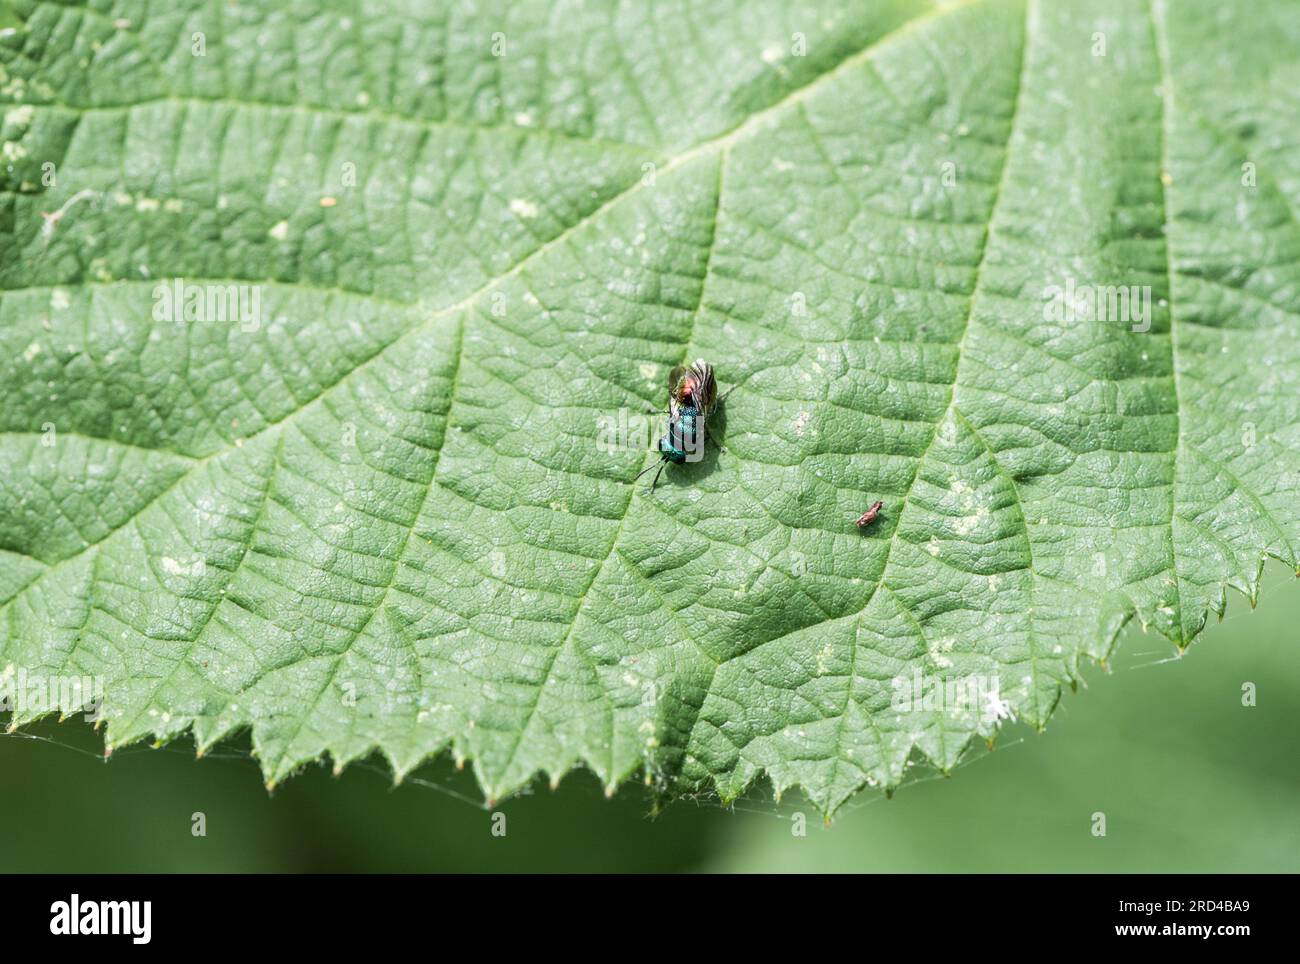 Una vespa a coda di rubino (Chrysis sp.) riposa su una foglia Foto Stock